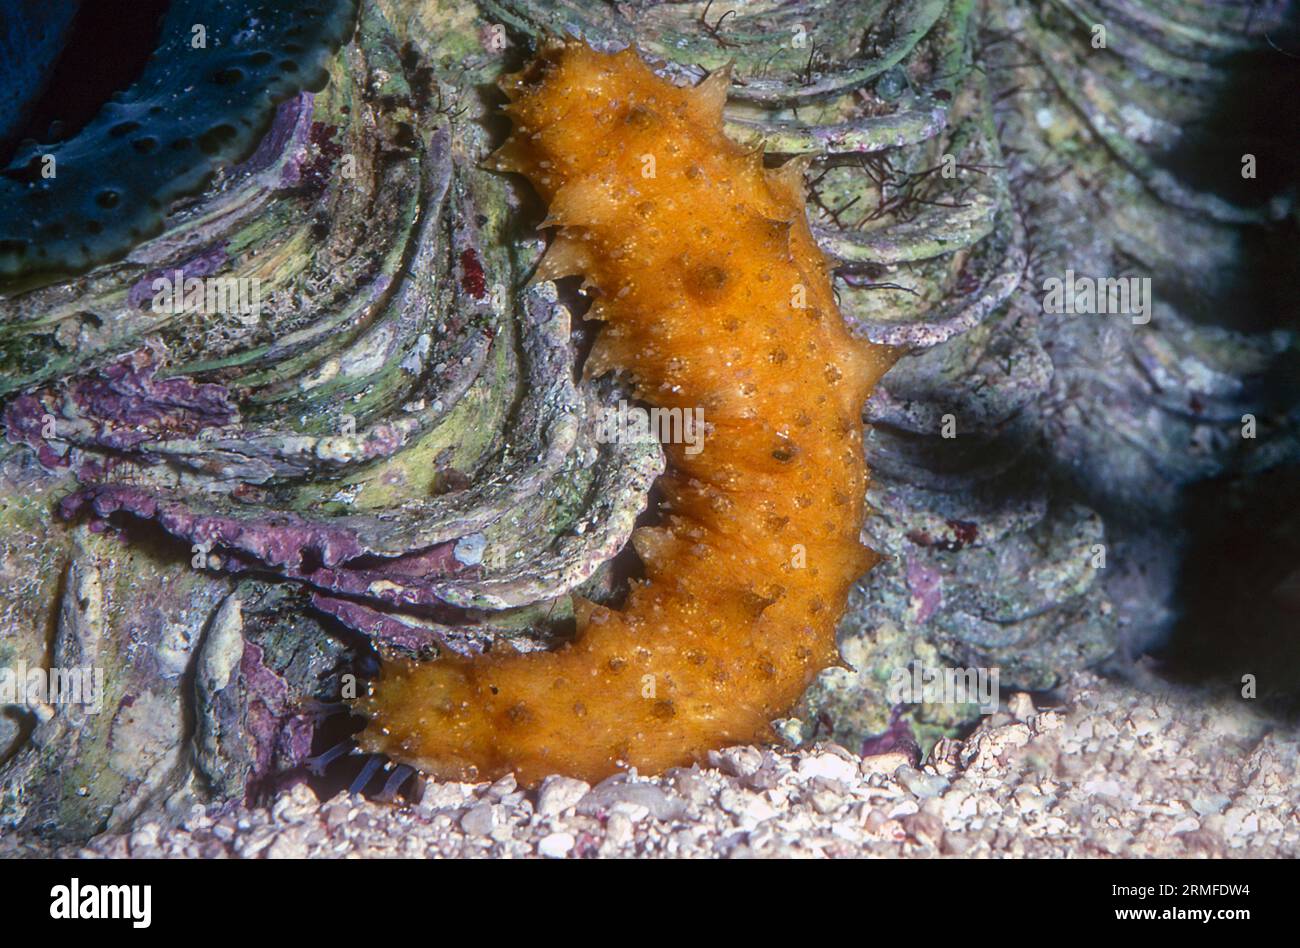 California sea cucumber (Apostichopus californicus), juvenile. Aquariumphoto. Stock Photo